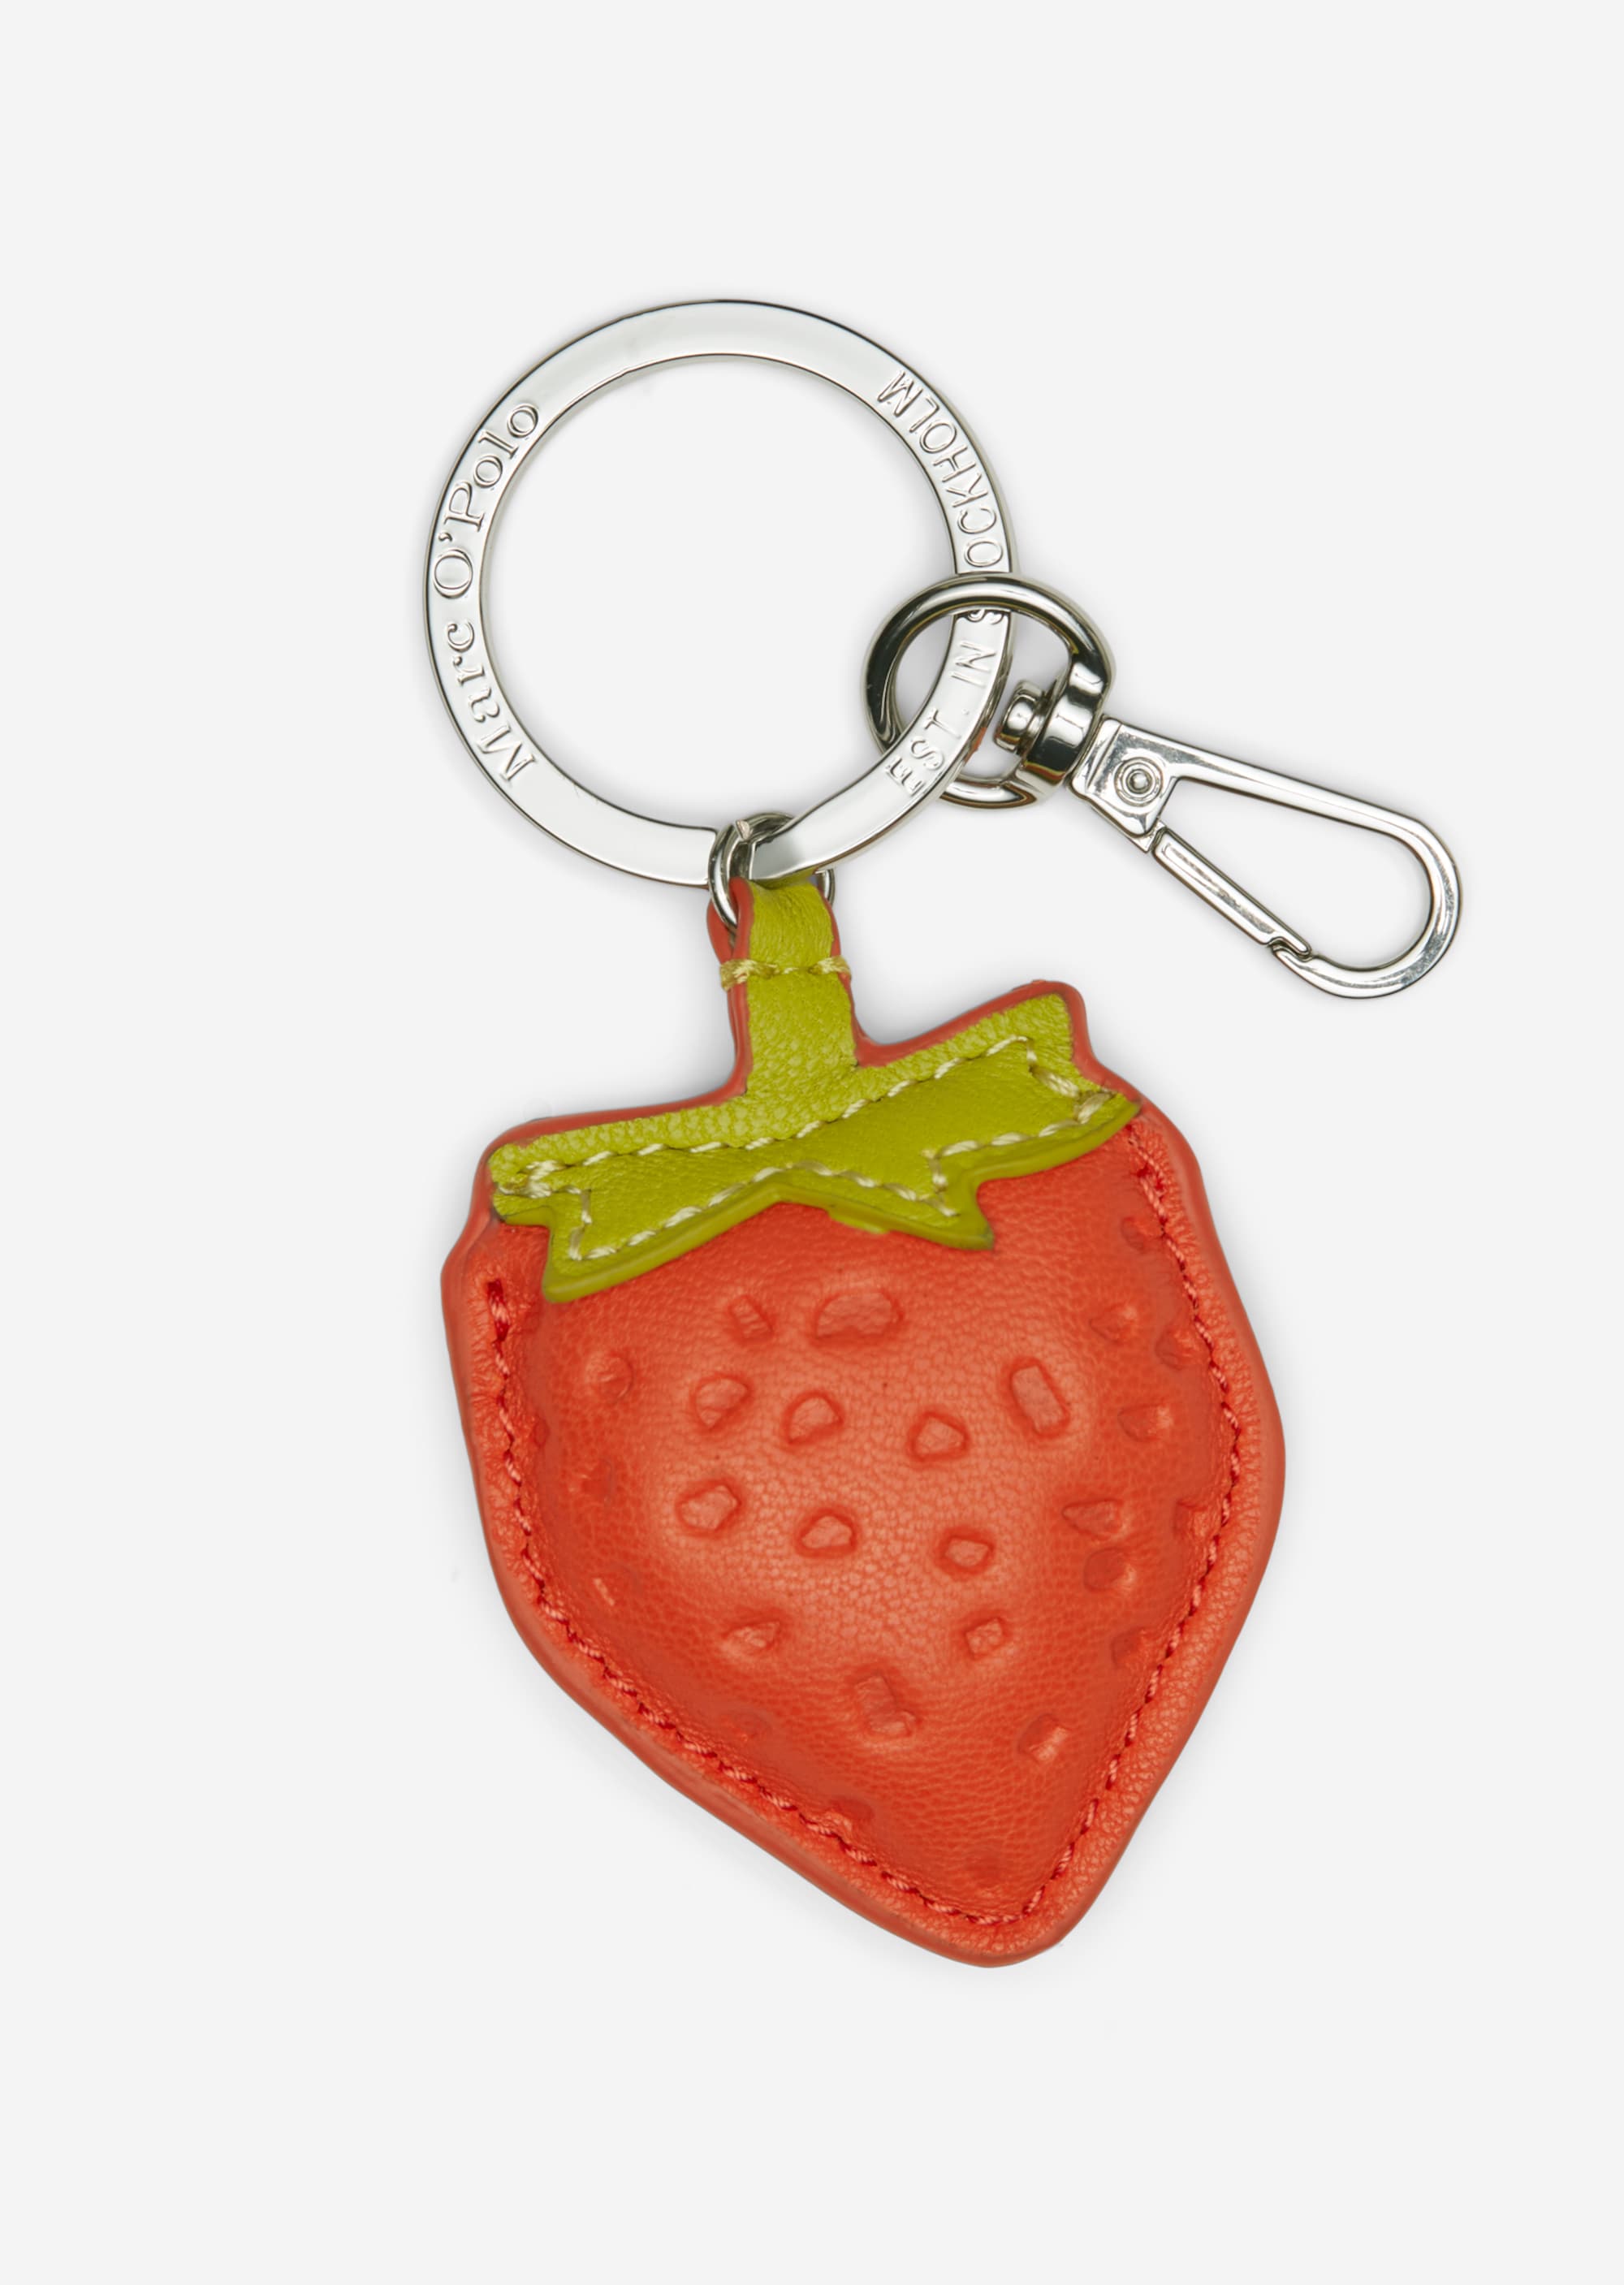 Schlüsselanhänger im Erdbeer-Format